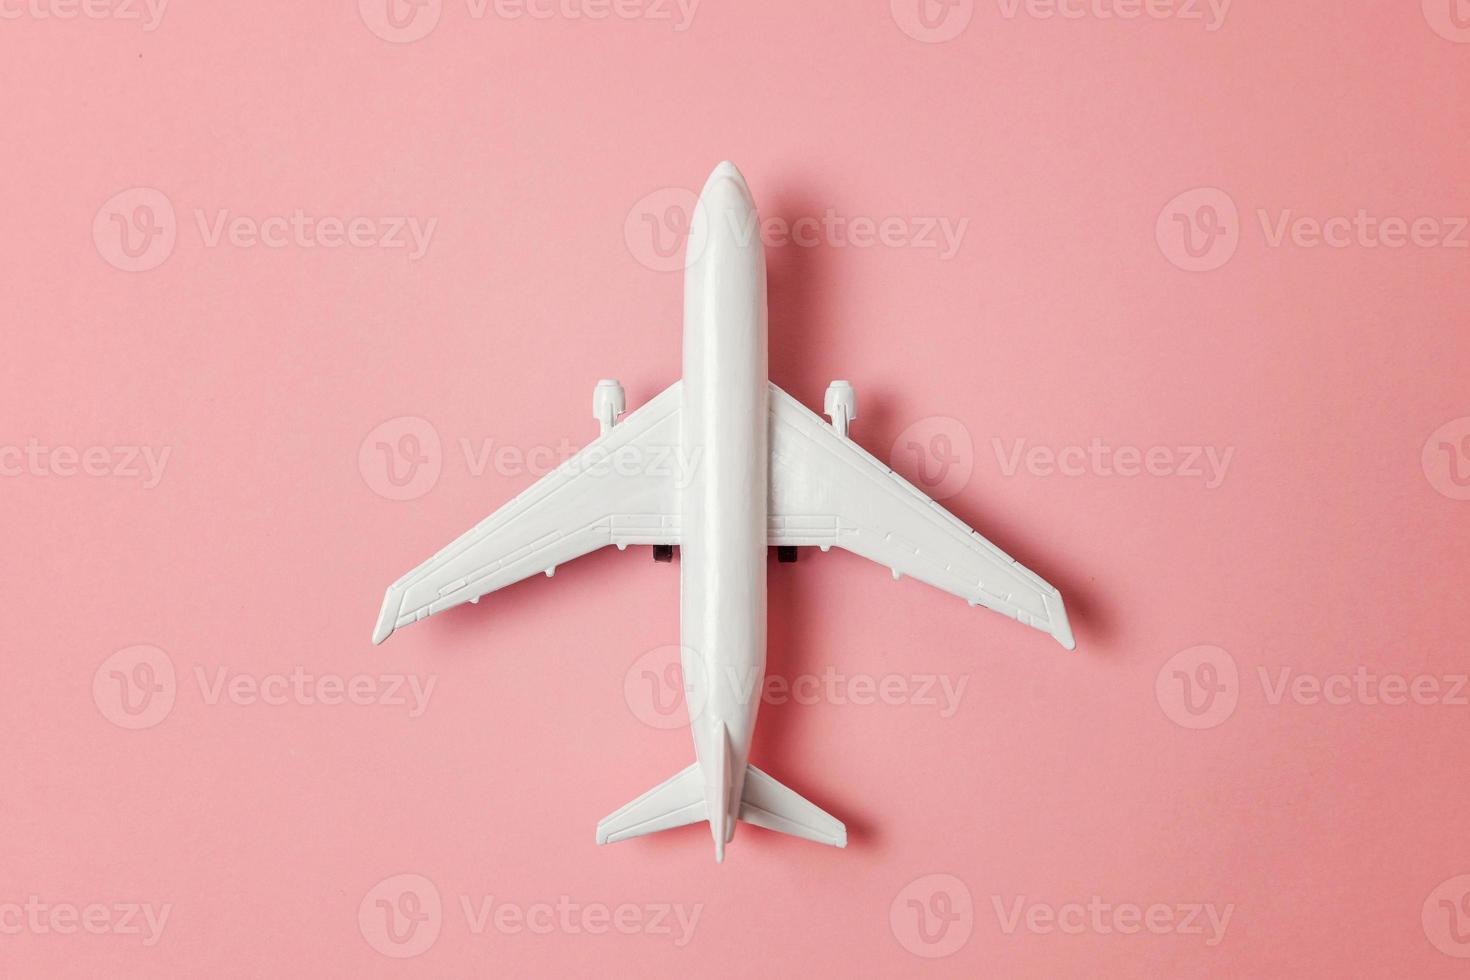 semplicemente piatto posare design miniatura giocattolo modello aereo su rosa pastello colorato carta di moda sfondo. viaggio di aereo vacanza estate fine settimana mare avventura viaggio viaggio biglietto giro concetto. foto